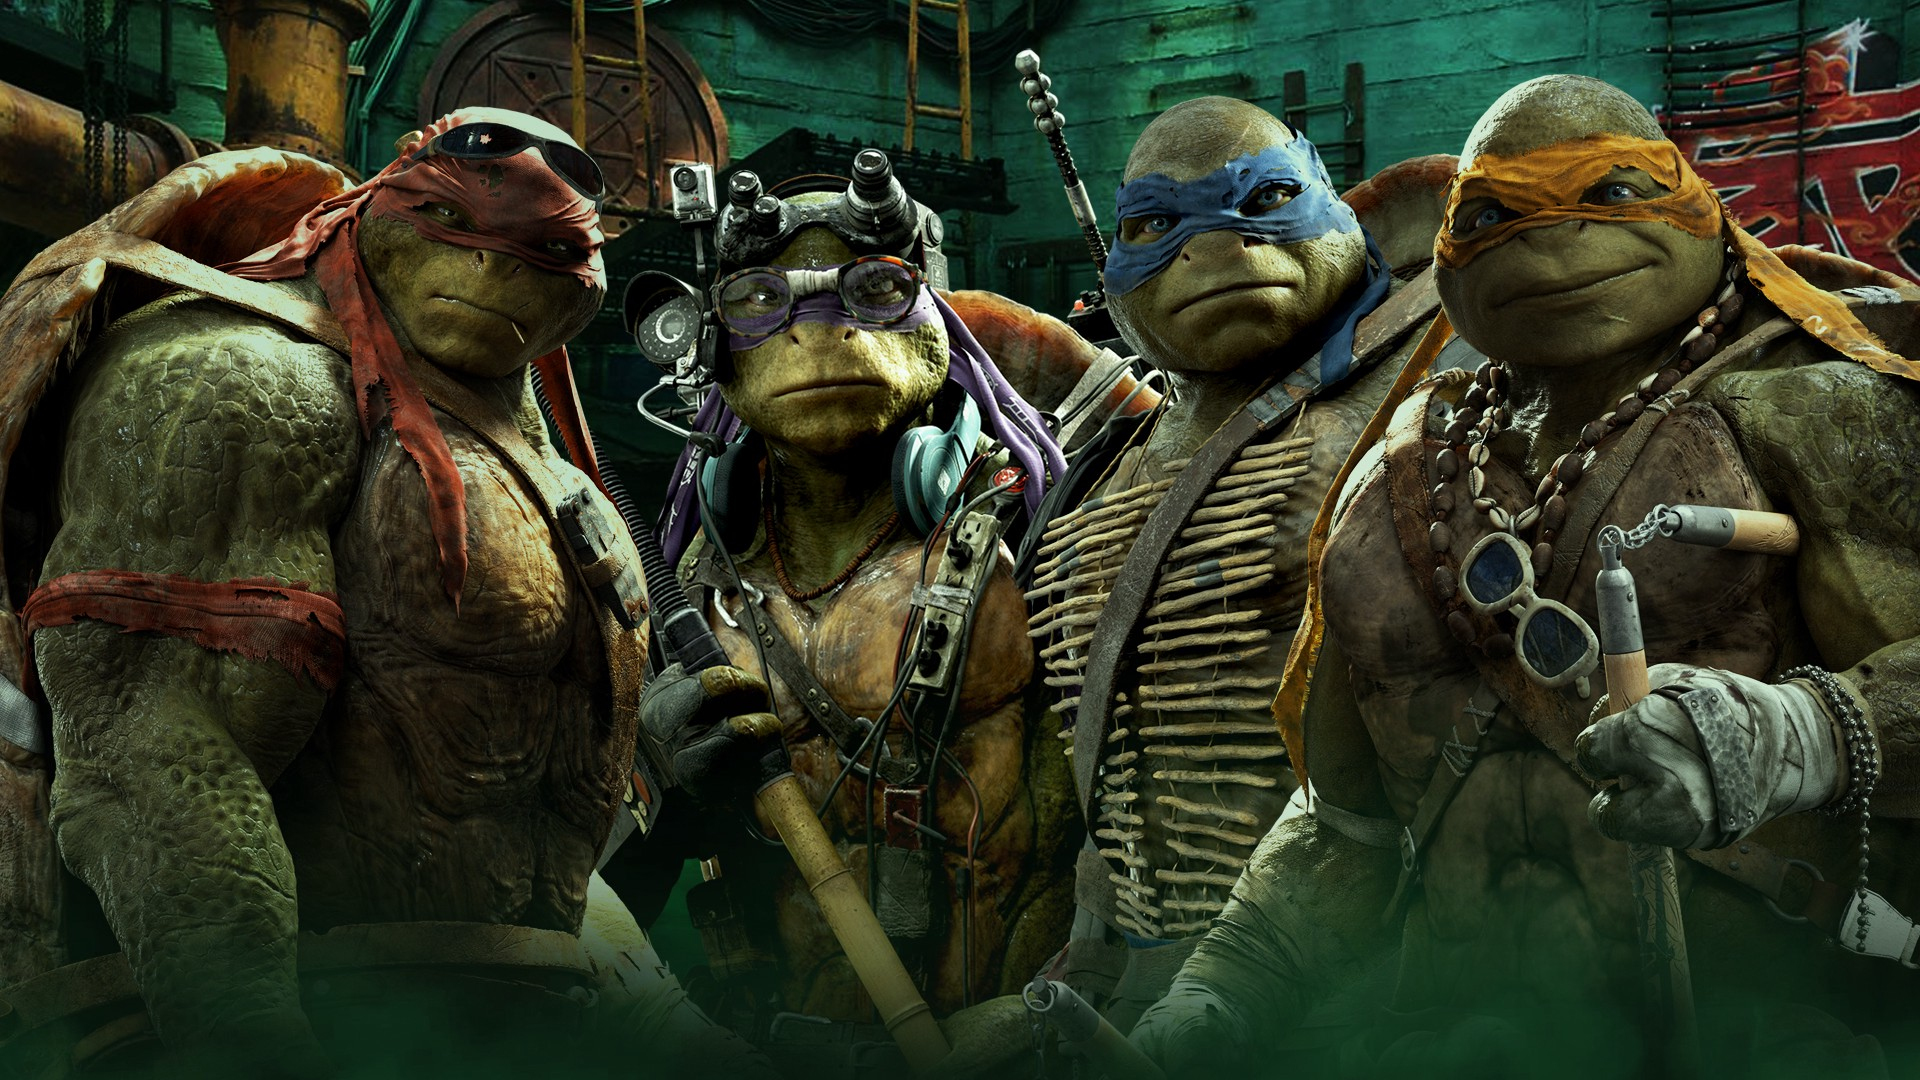 Xem Phim Ninja Rùa 1, Mutant Ninja Turtles 1 2014